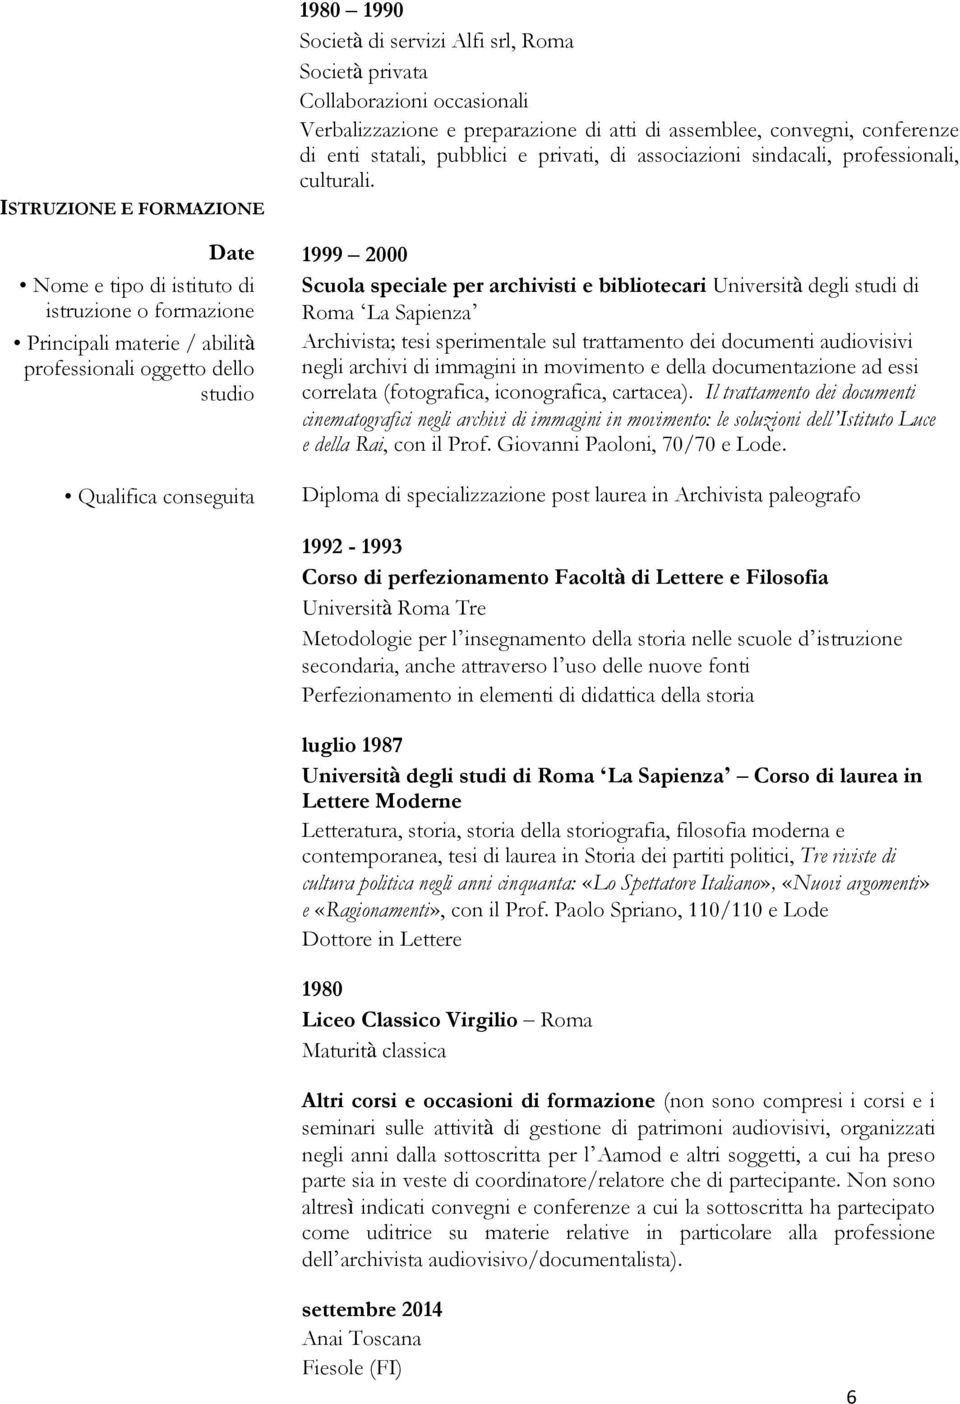 Date 1999 2000 Nome e tipo di istituto di Scuola speciale per archivisti e bibliotecari Università degli studi di istruzione o formazione Roma La Sapienza Principali materie / abilità Archivista;